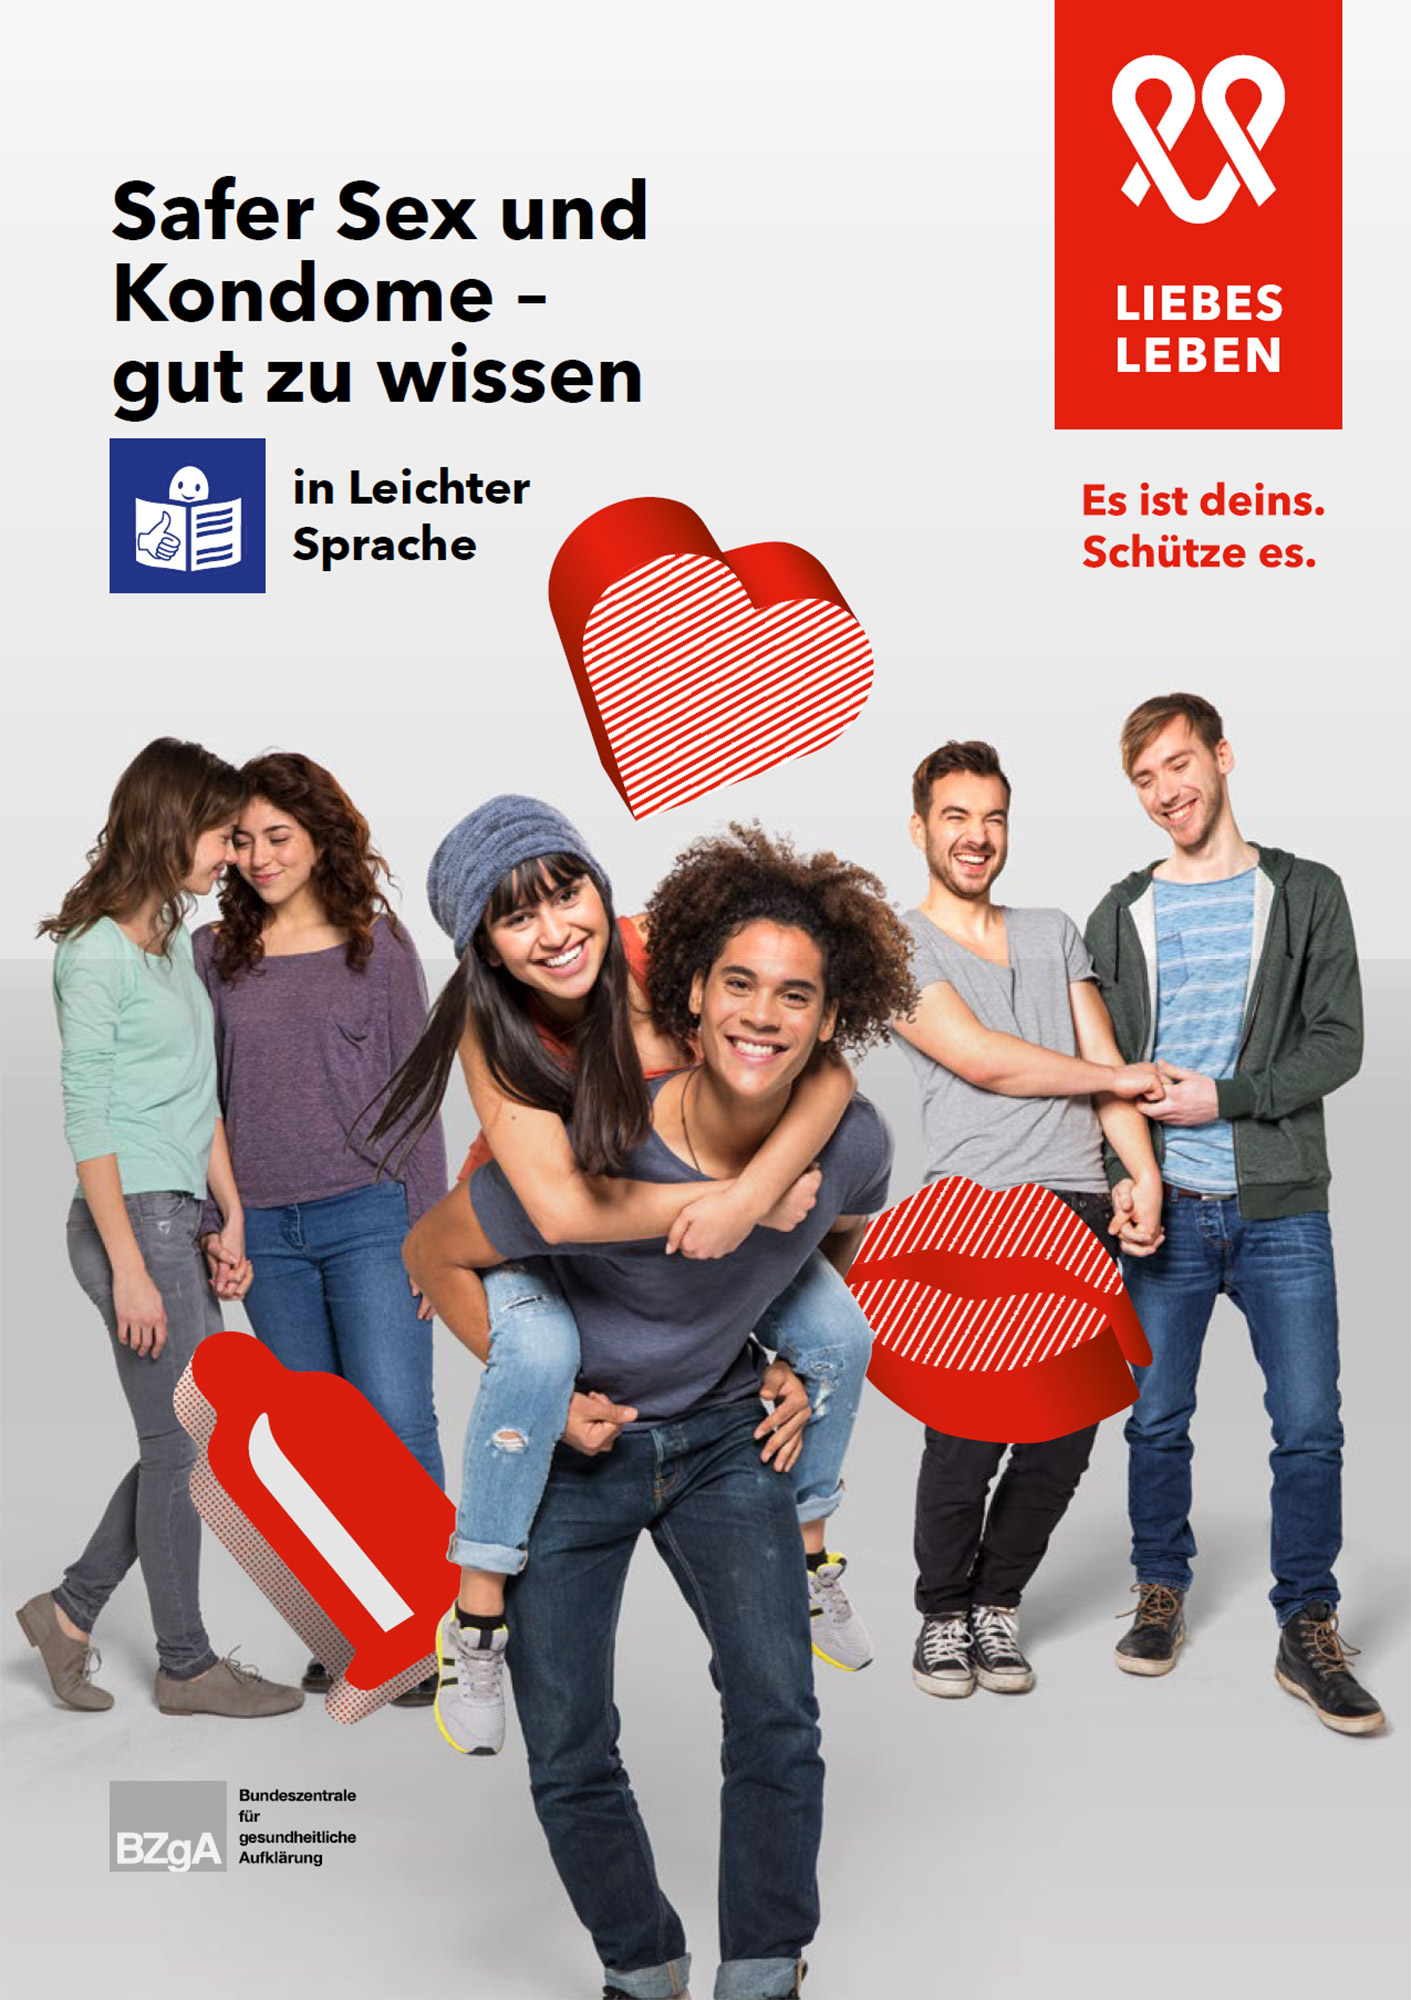 Titelseite der Broschüre "Safer Sex und Kondome - gut zu wissen"